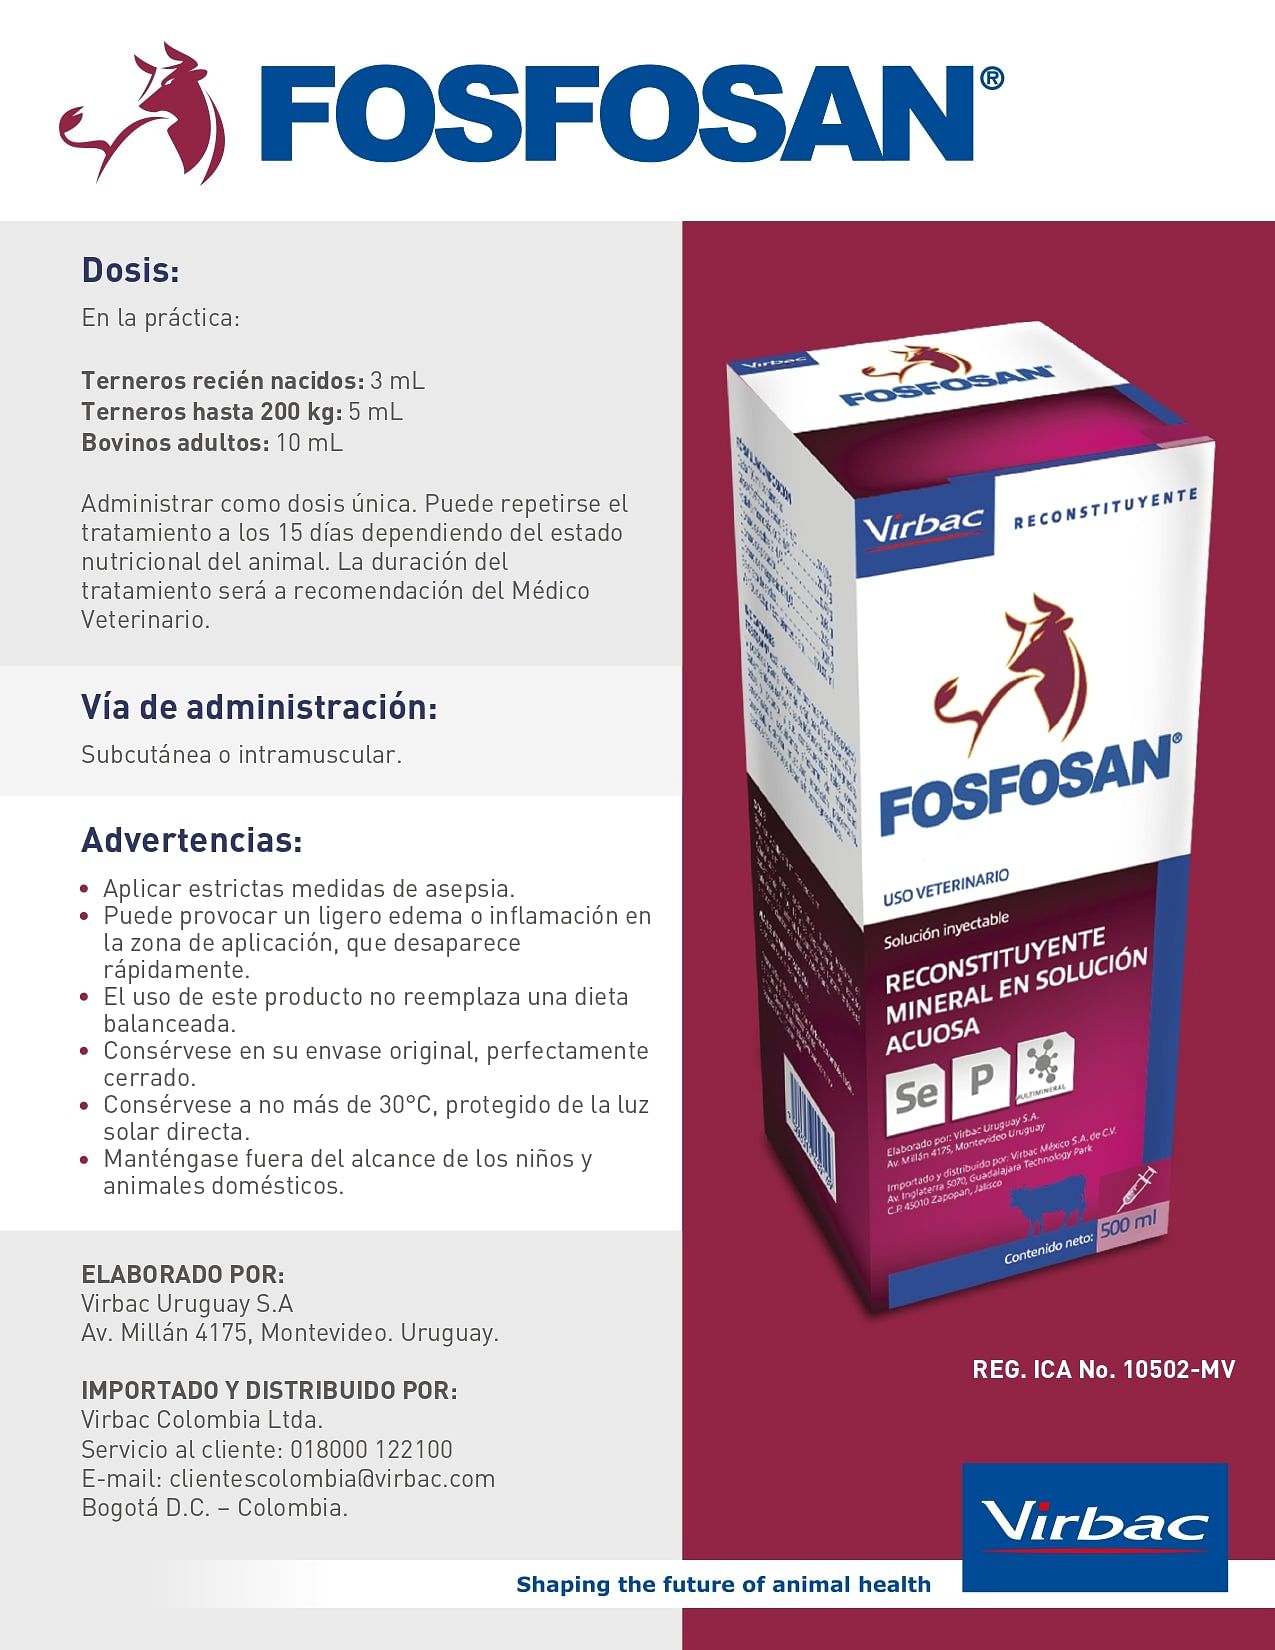 COMBO FOSFOSAN 5 FRASCOS X 500 ml.